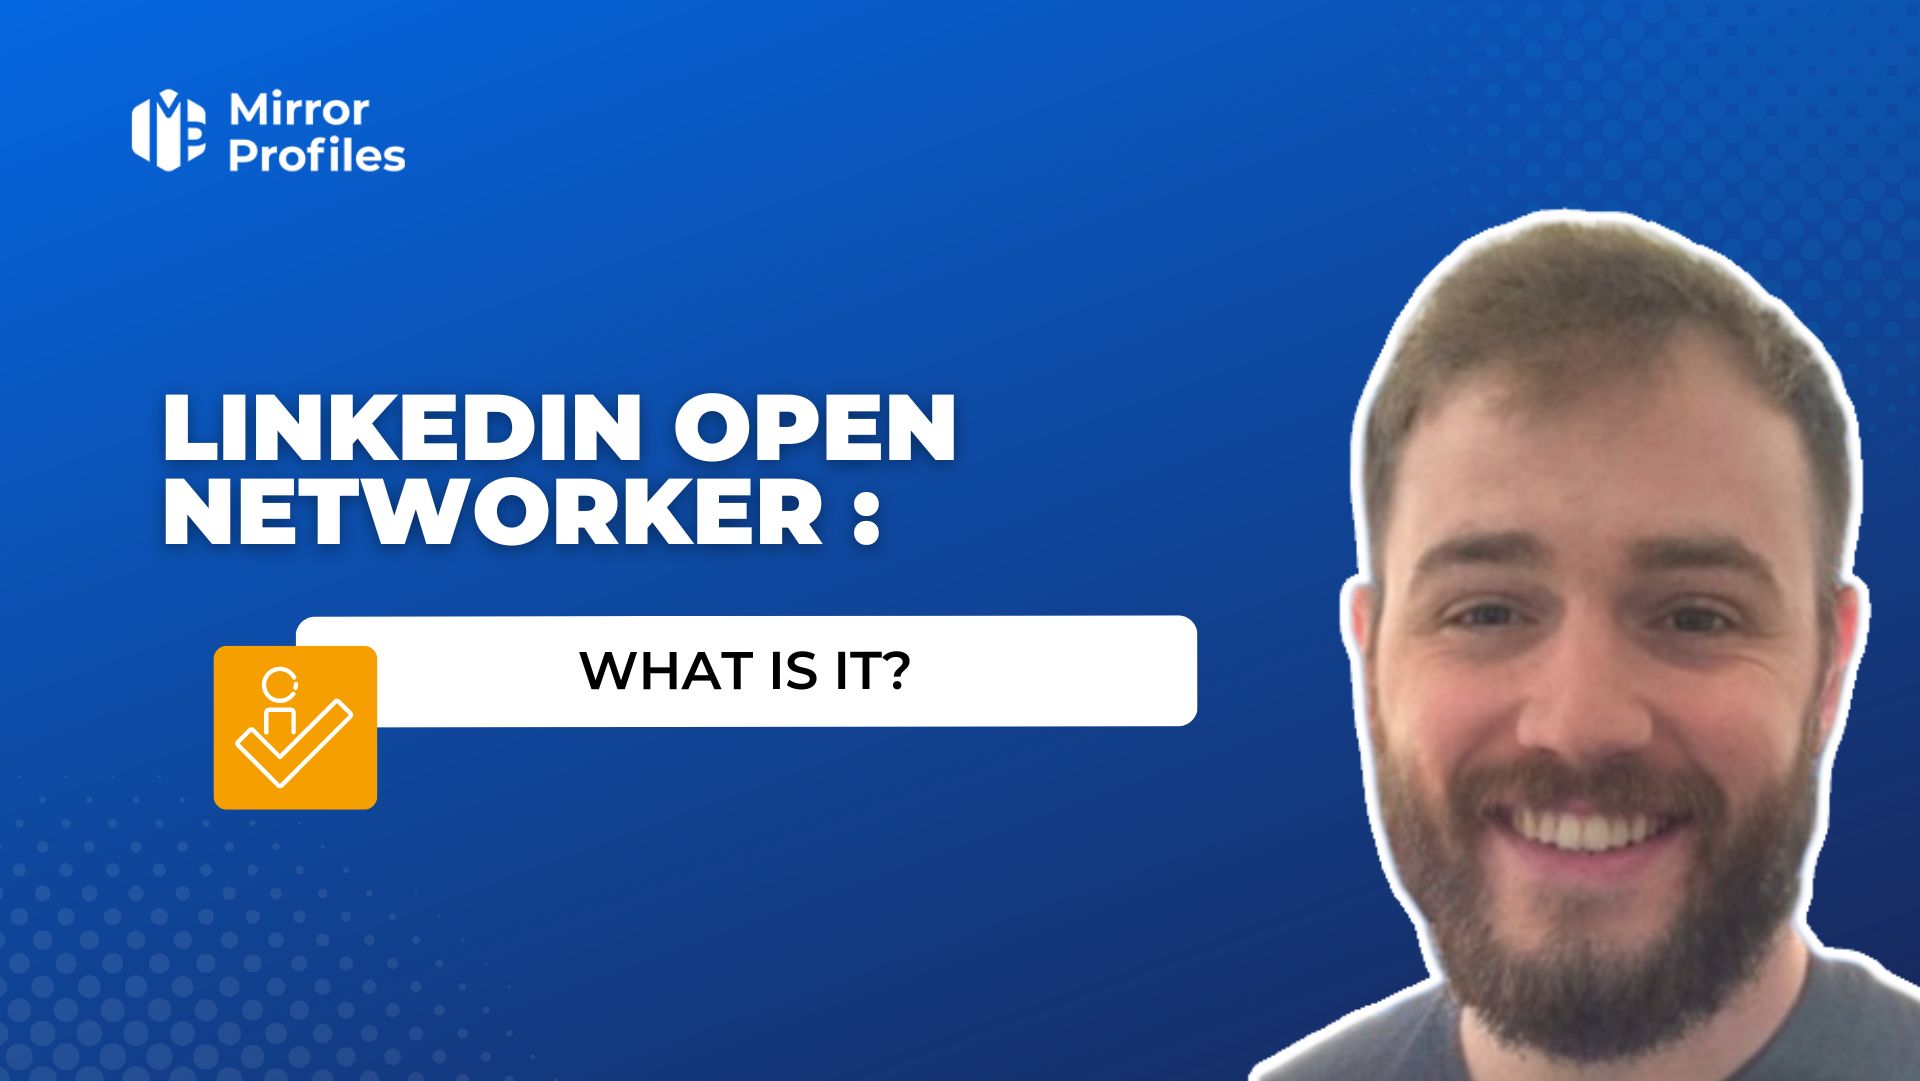 LinkedIn Open Networker : what is it?